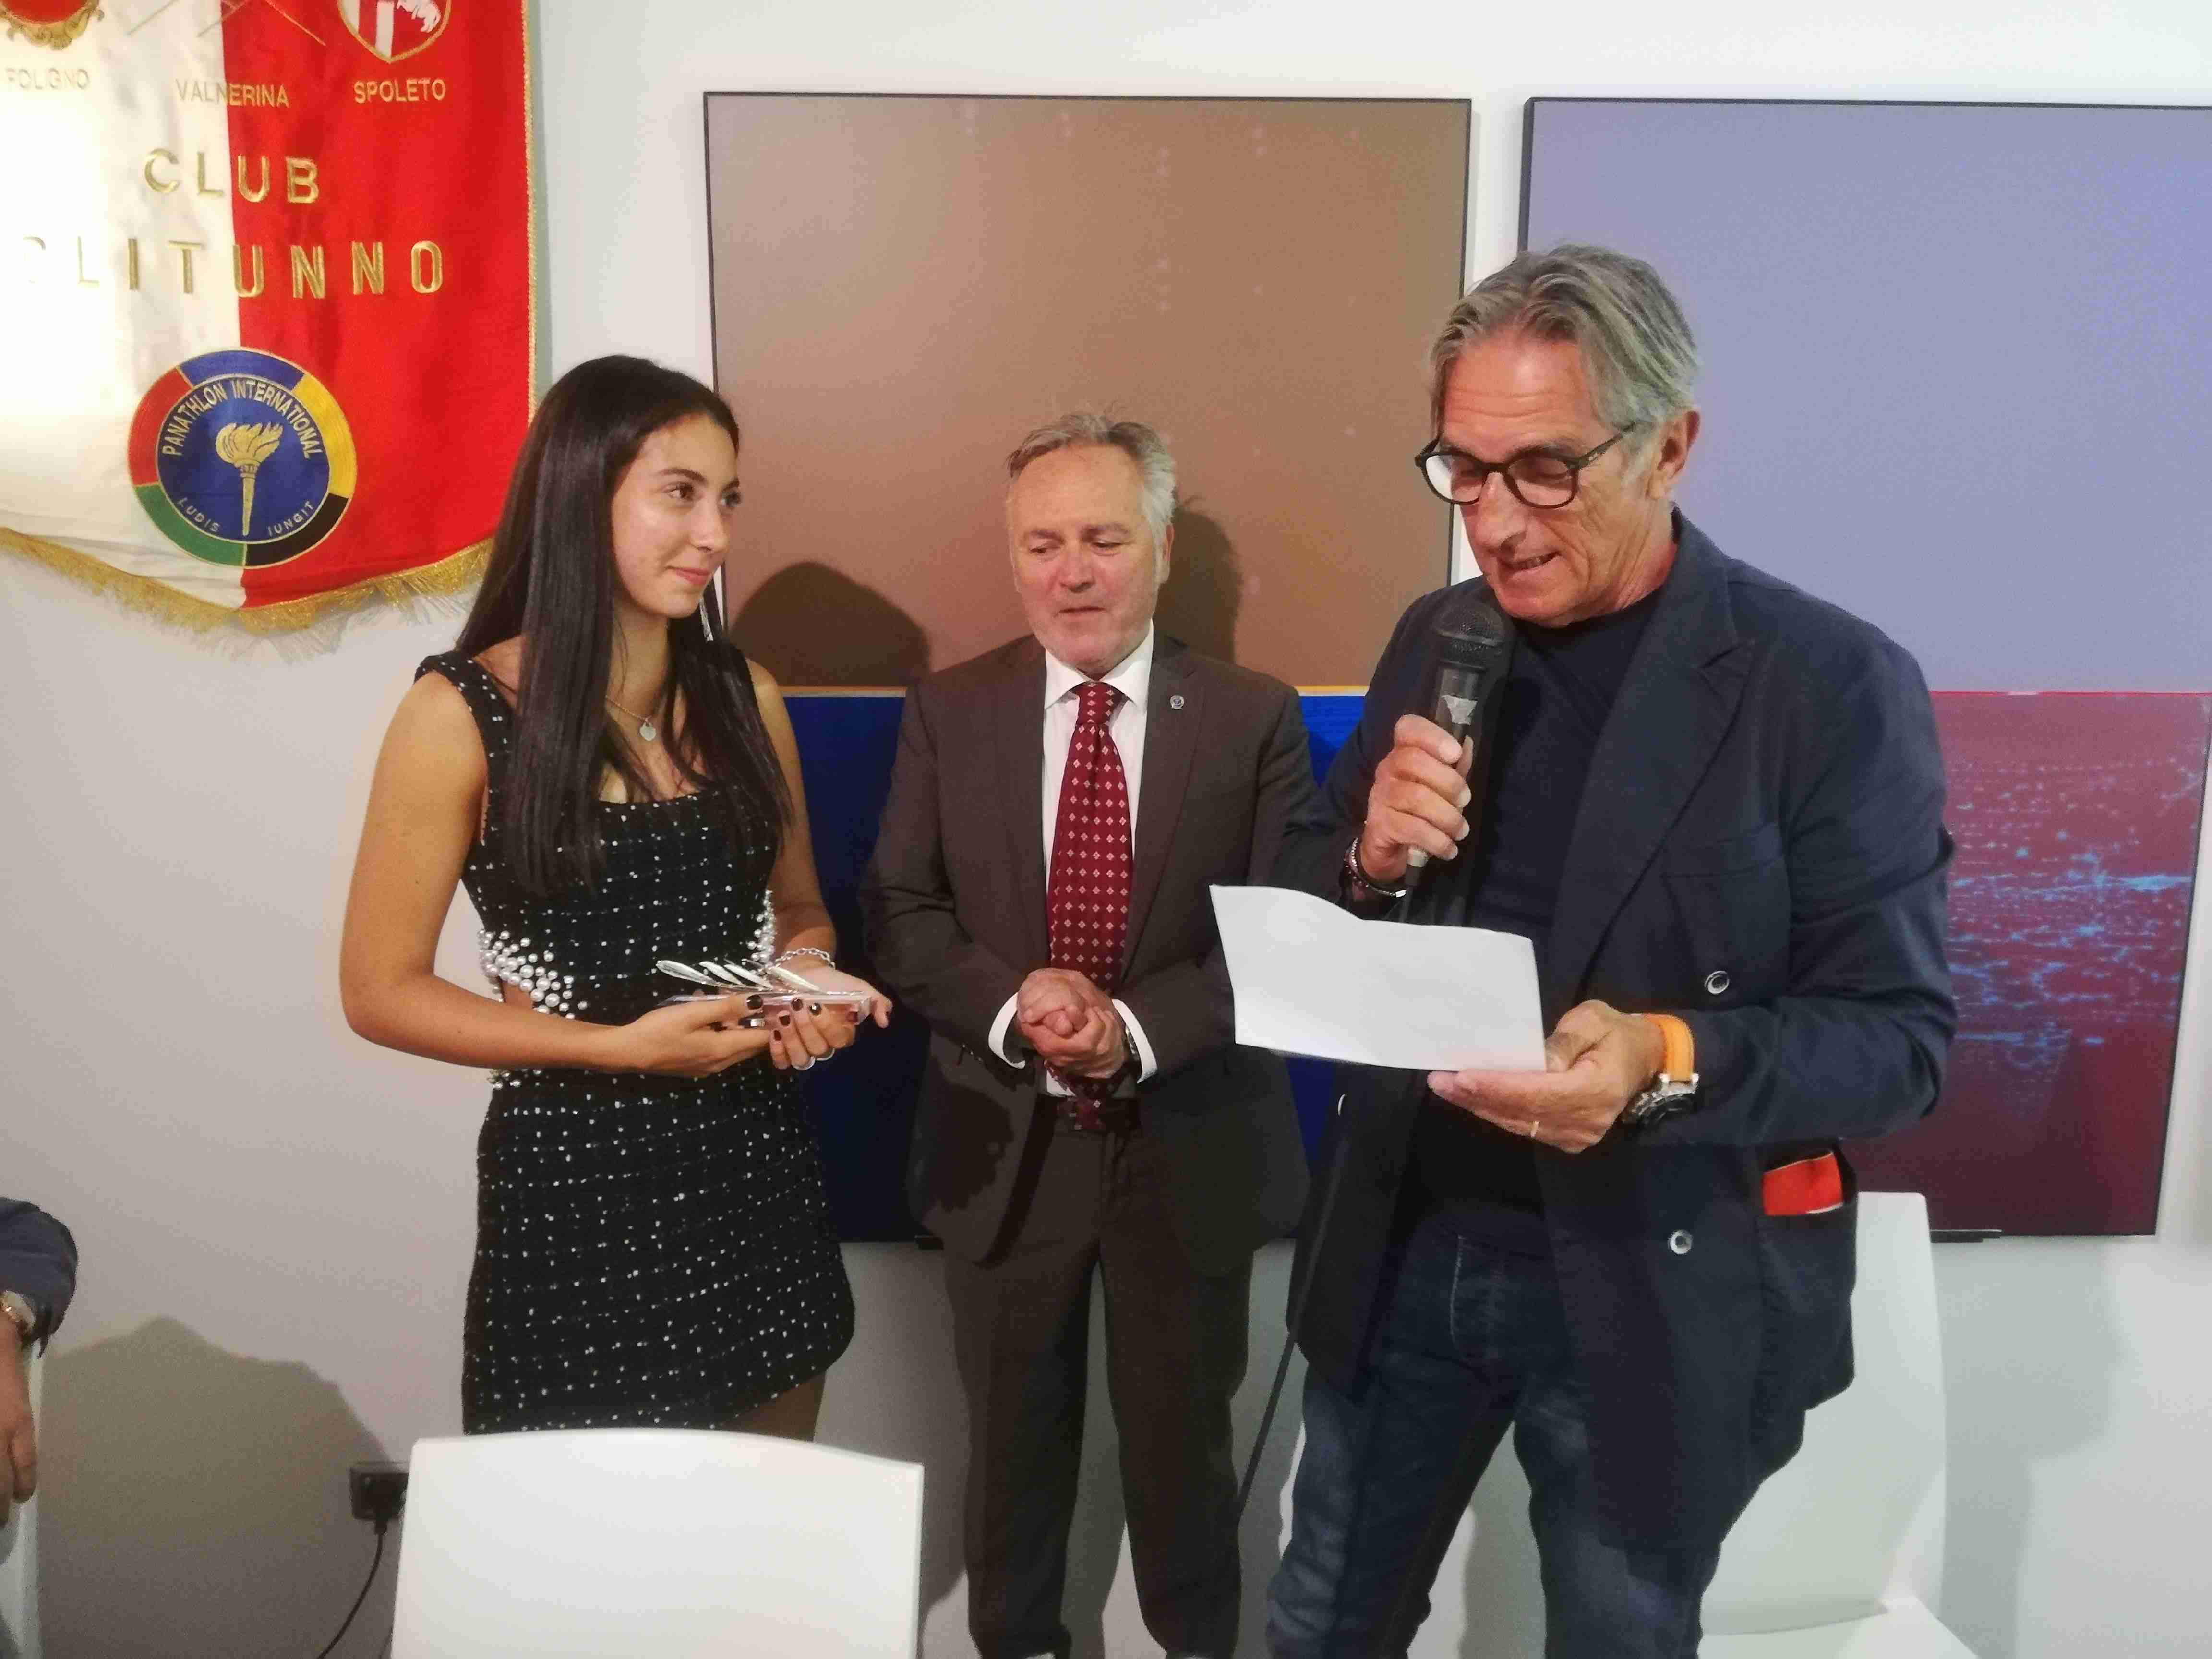 Panclitunno premia Elettra Gradassi con sindaco Campello